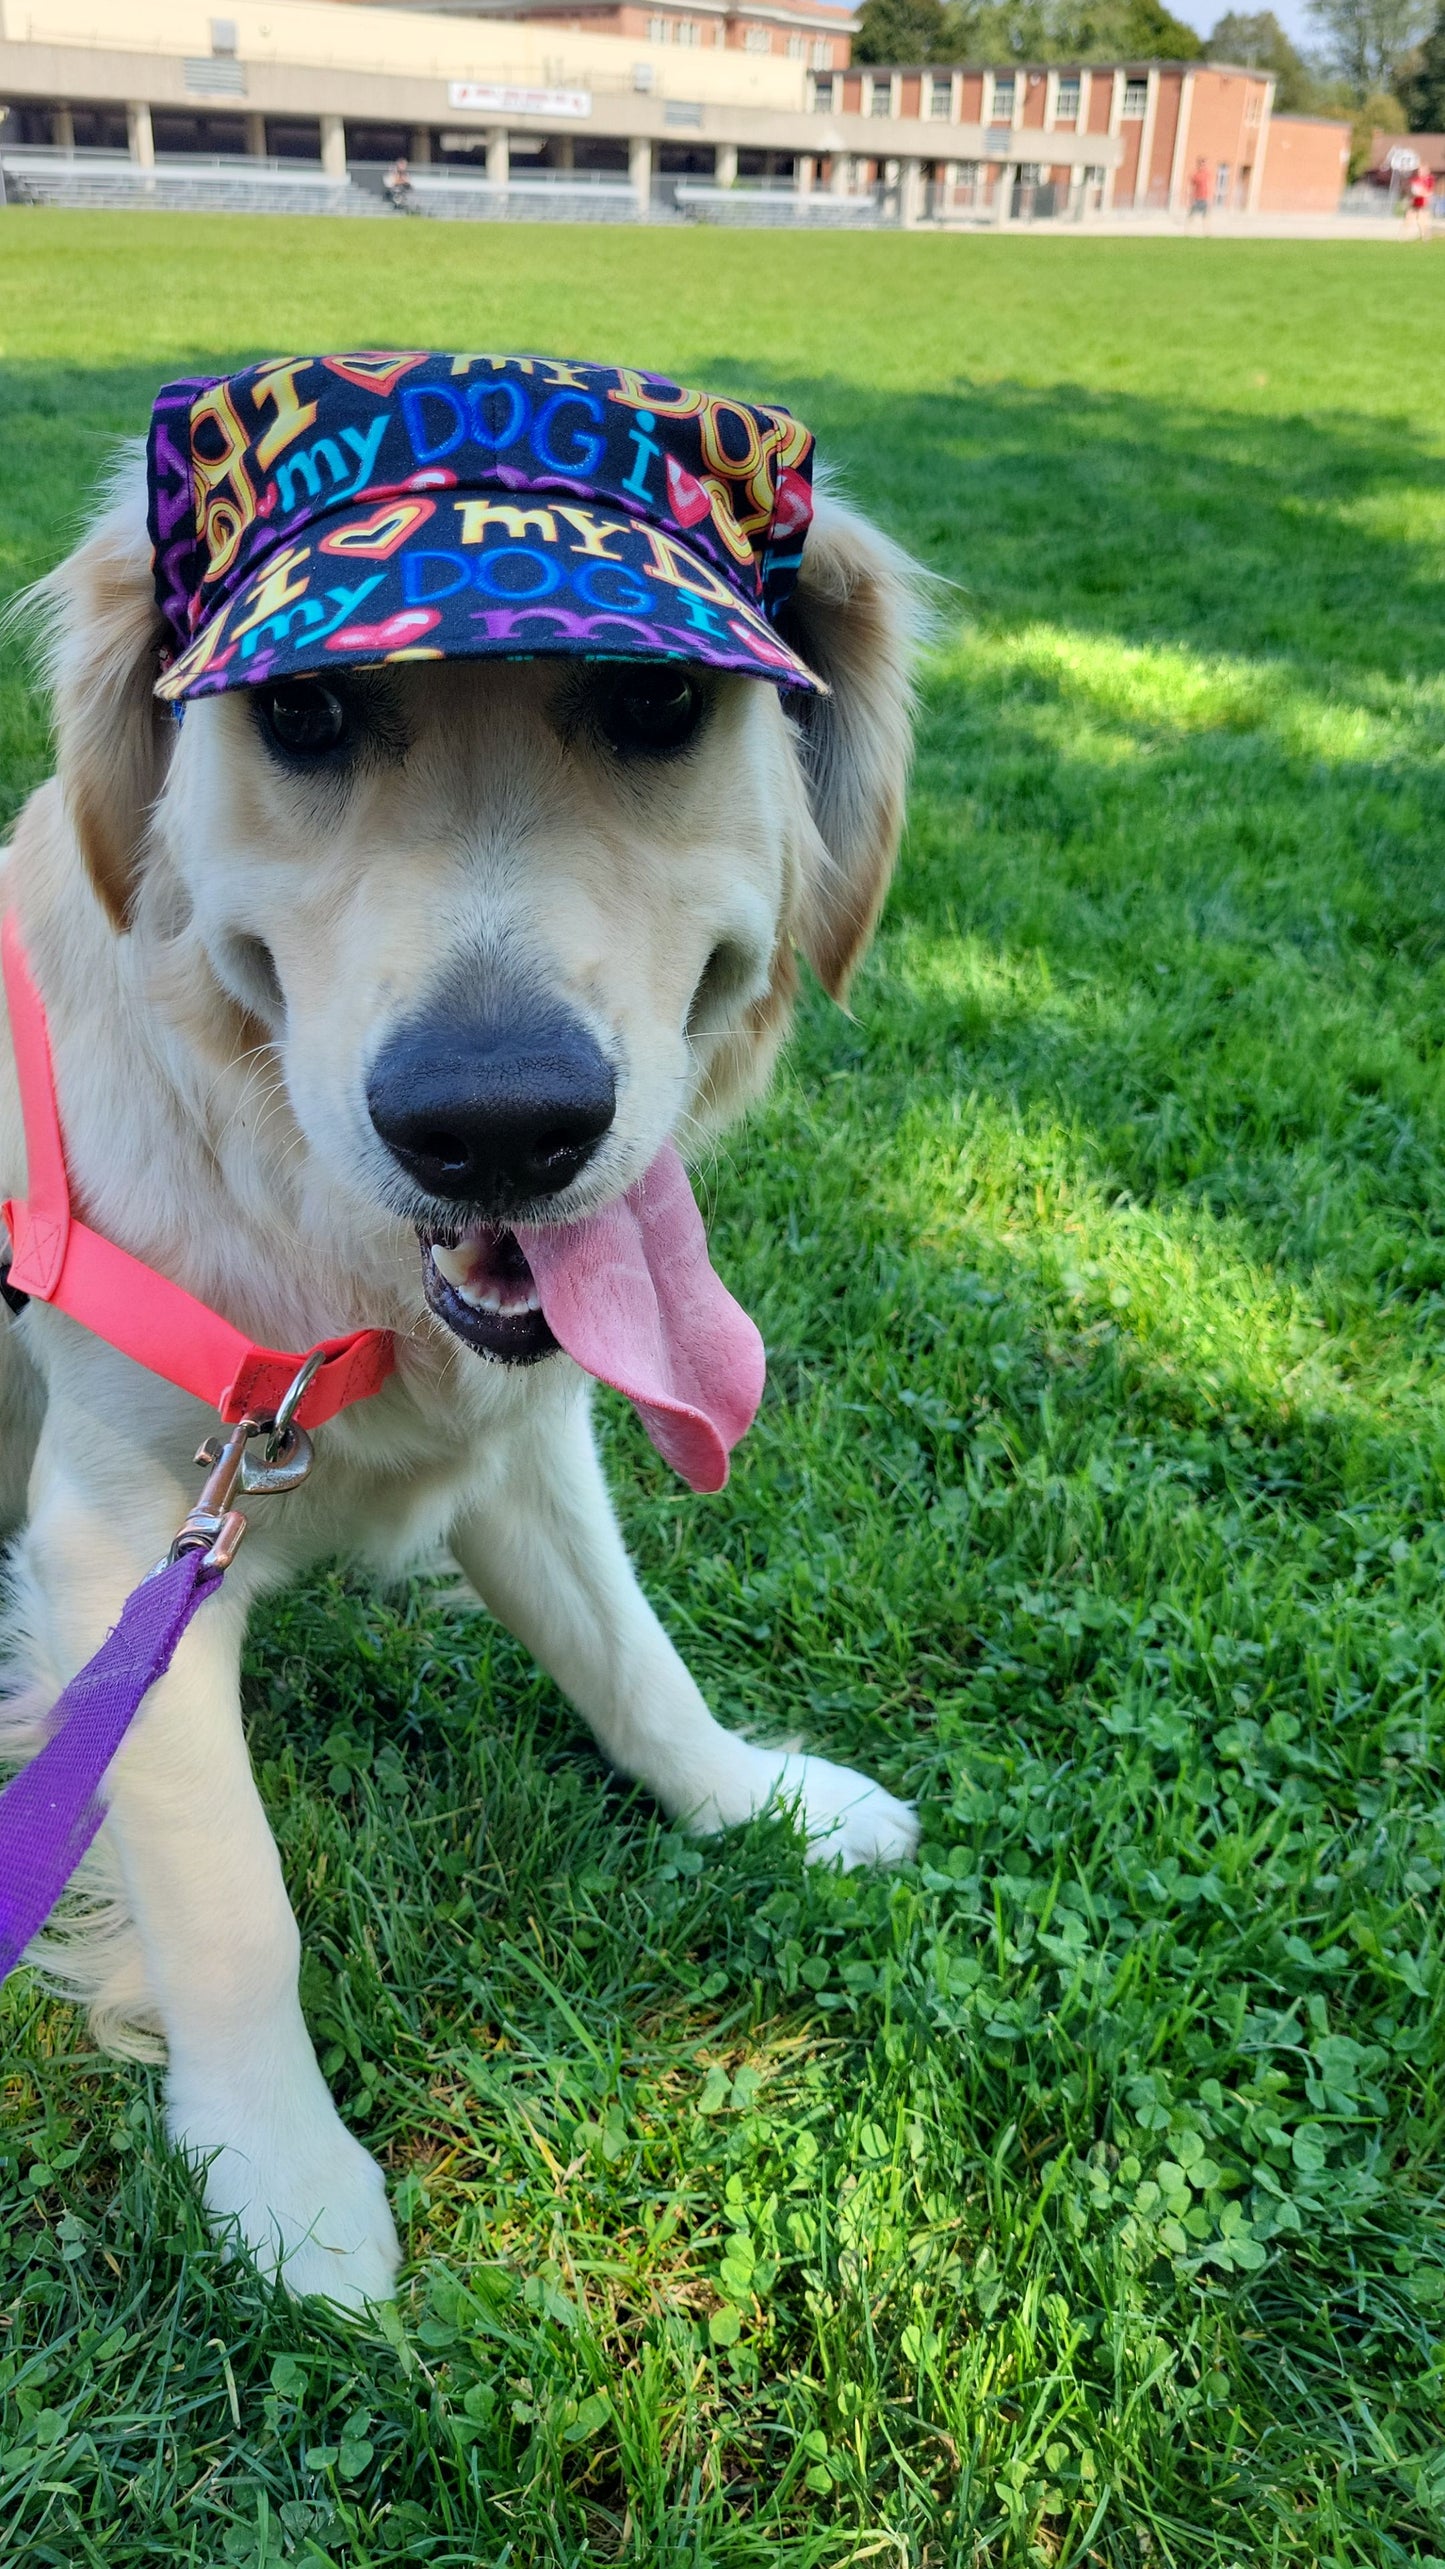 Dog Visor Hat - I Love My Dog